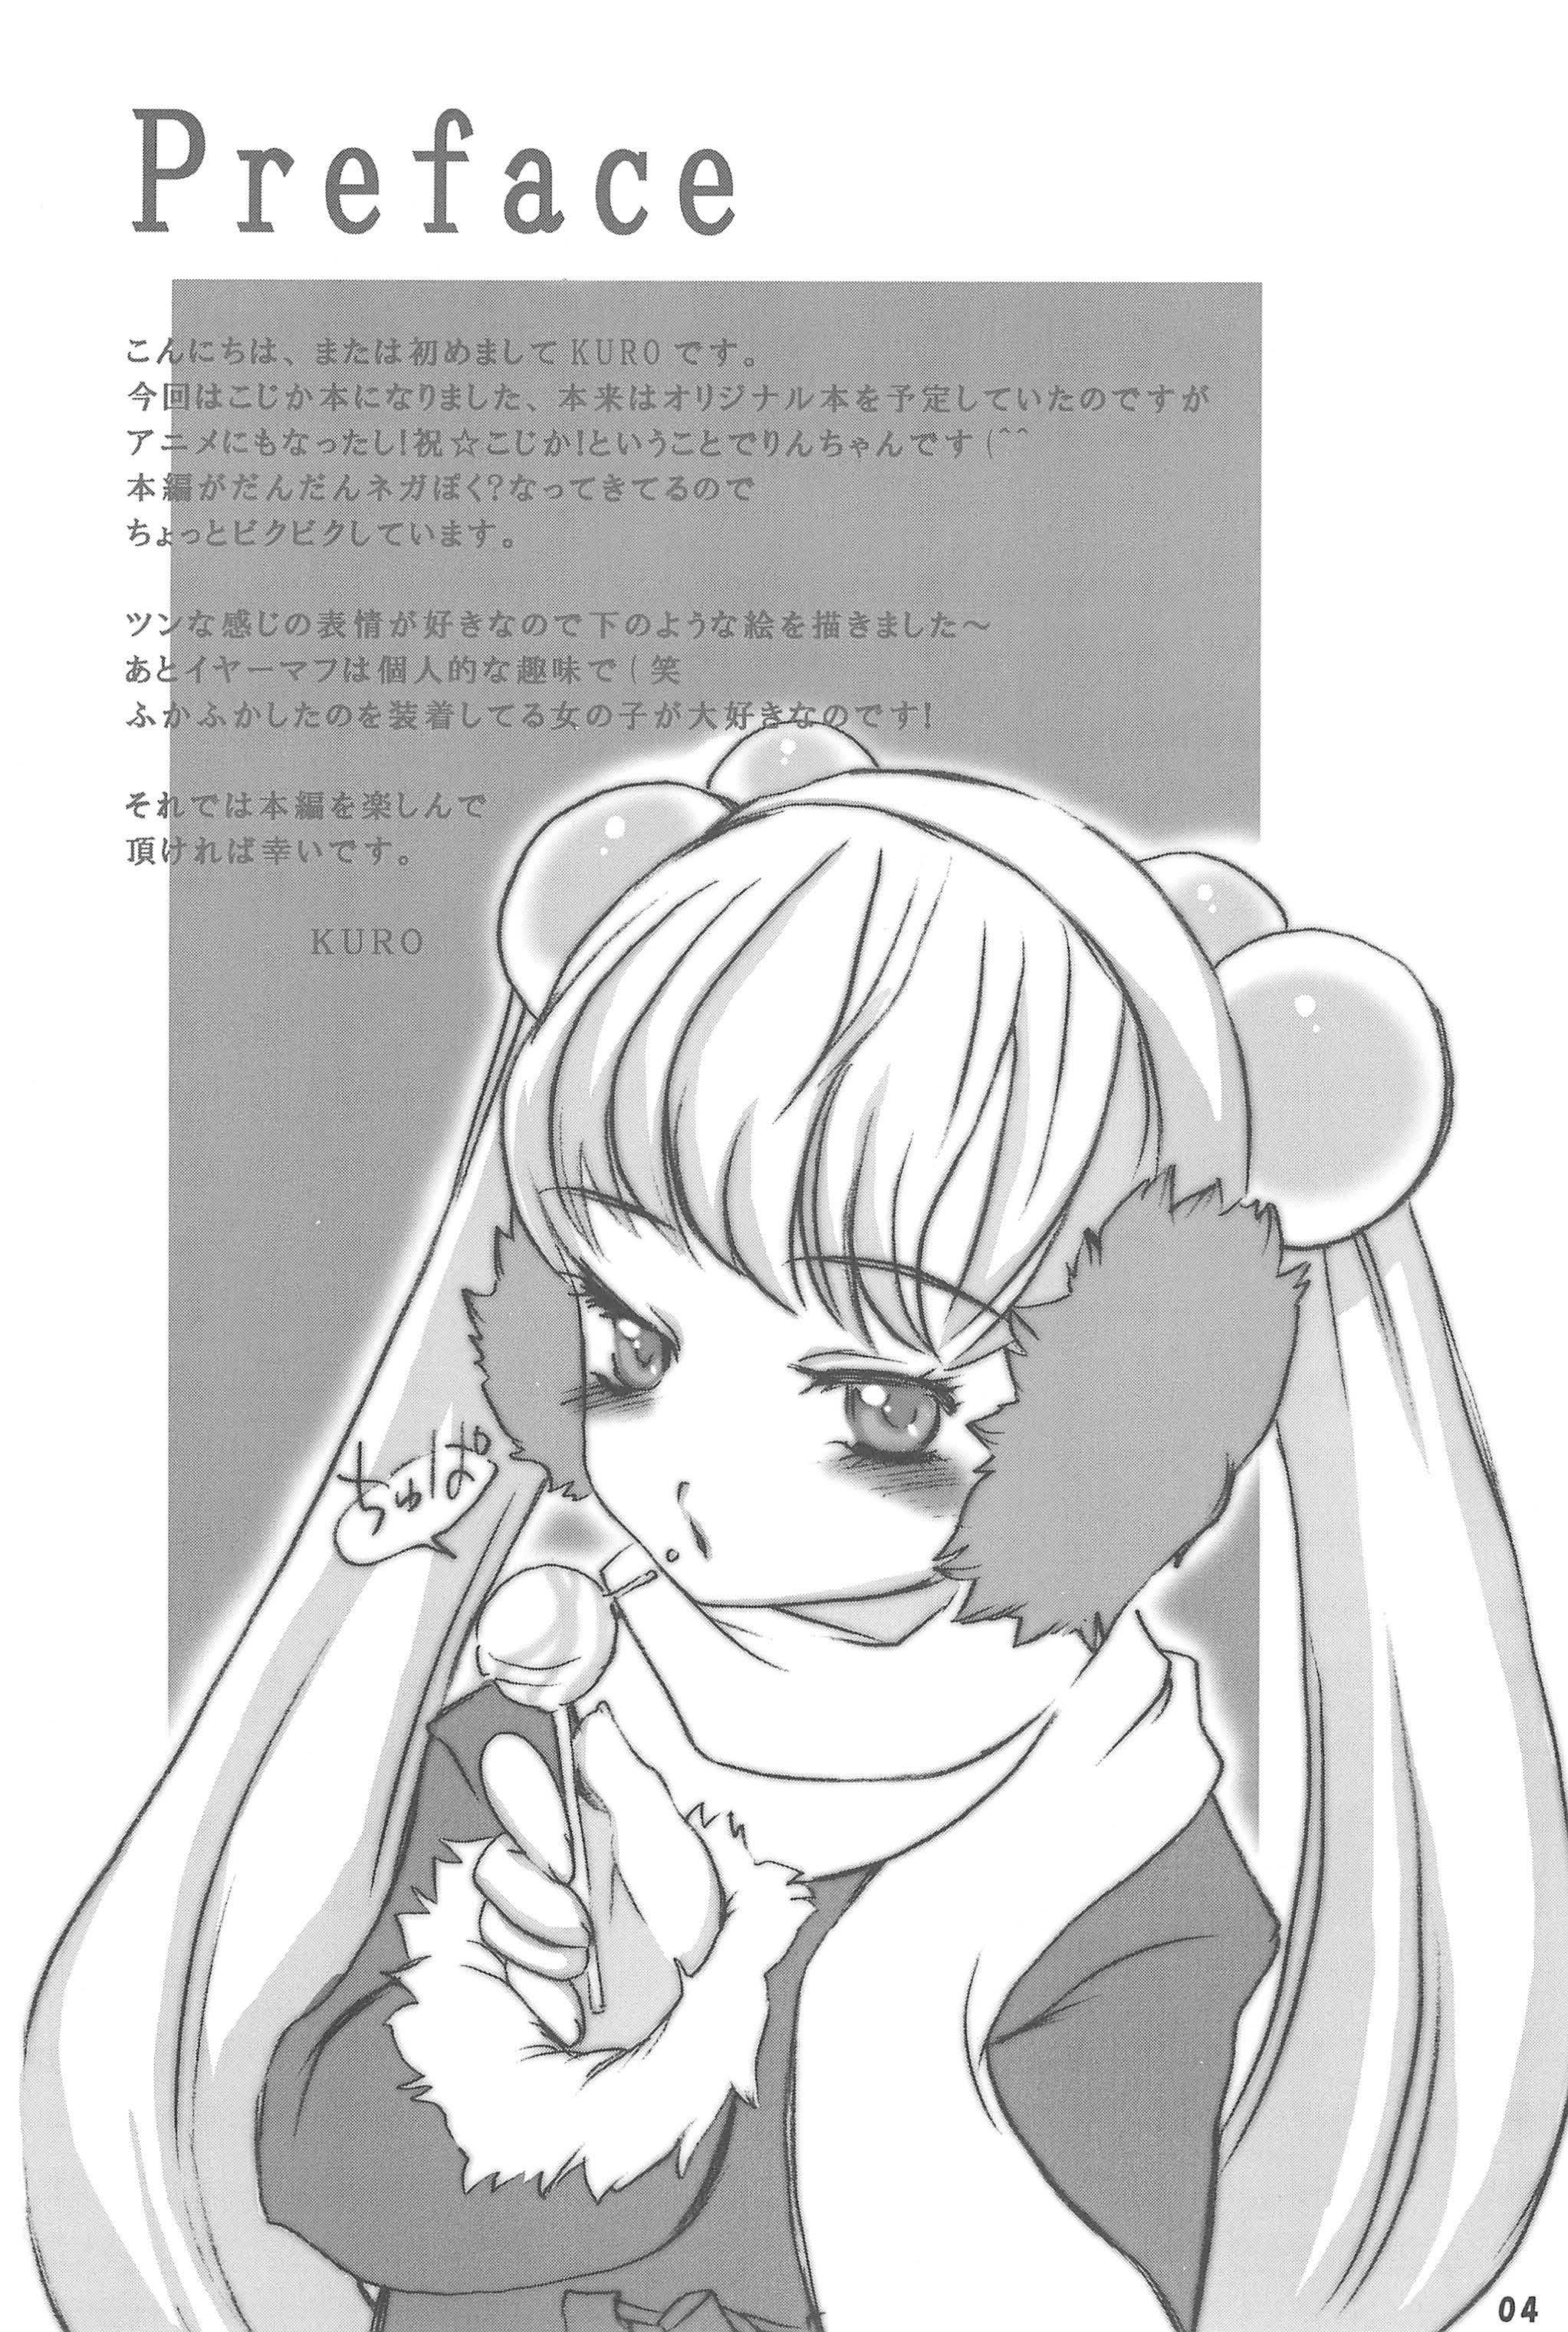 Cfnm Himitsu no Jikan - Kodomo no jikan Cutie - Page 4